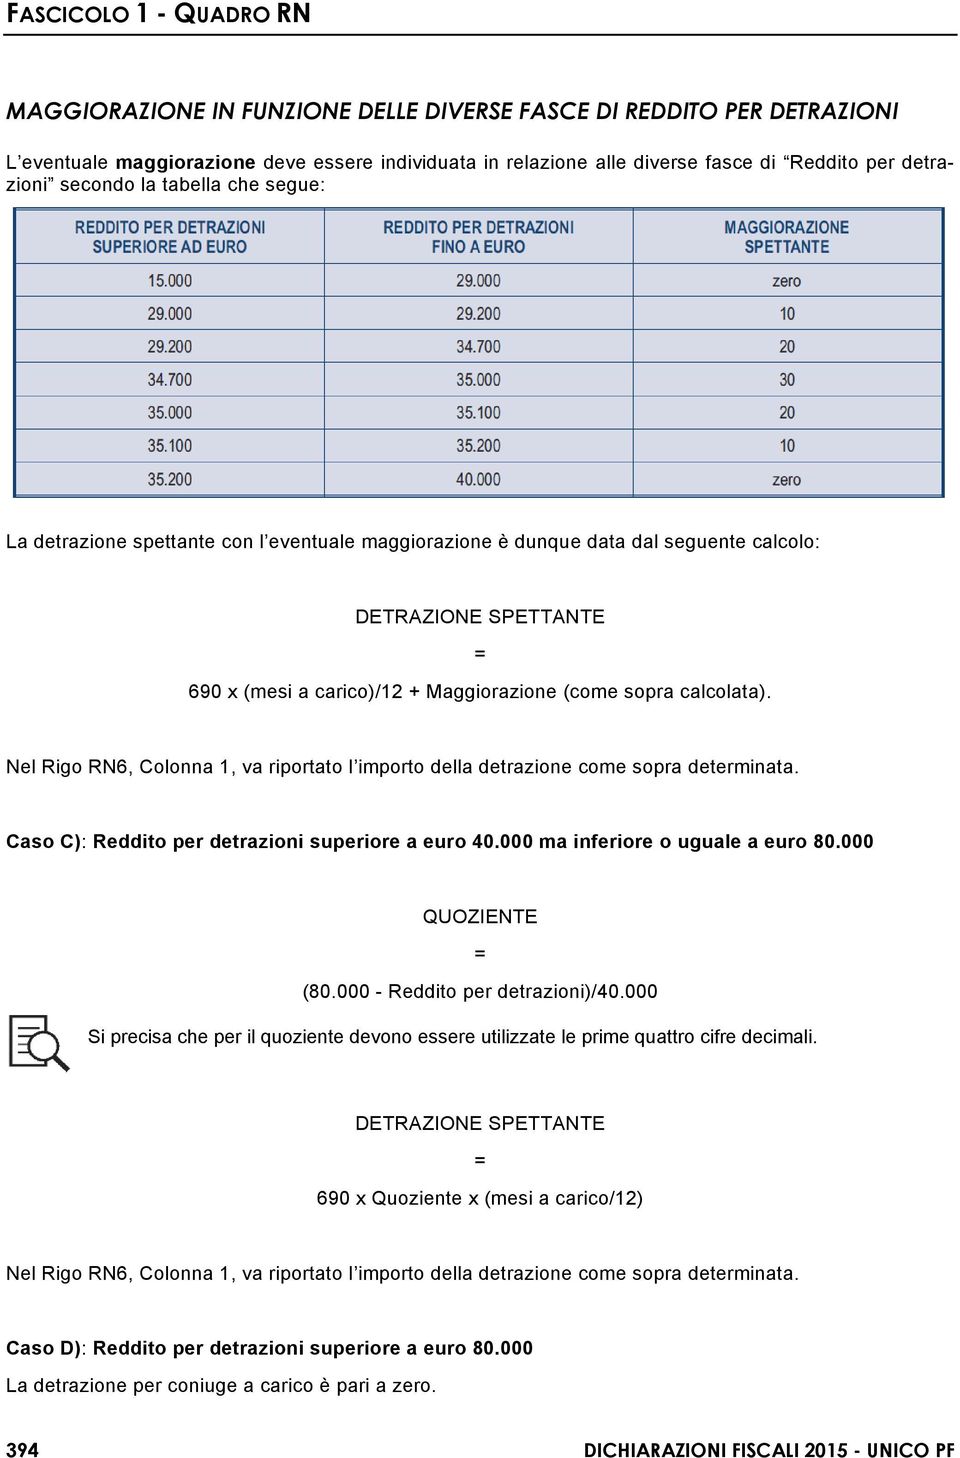 Nel Rigo RN6, Colonna 1, va riportato l importo della detrazione come sopra determinata. Caso C): Reddito per detrazioni superiore a euro 40.000 ma inferiore o uguale a euro 80.000 QUOZIENTE = (80.